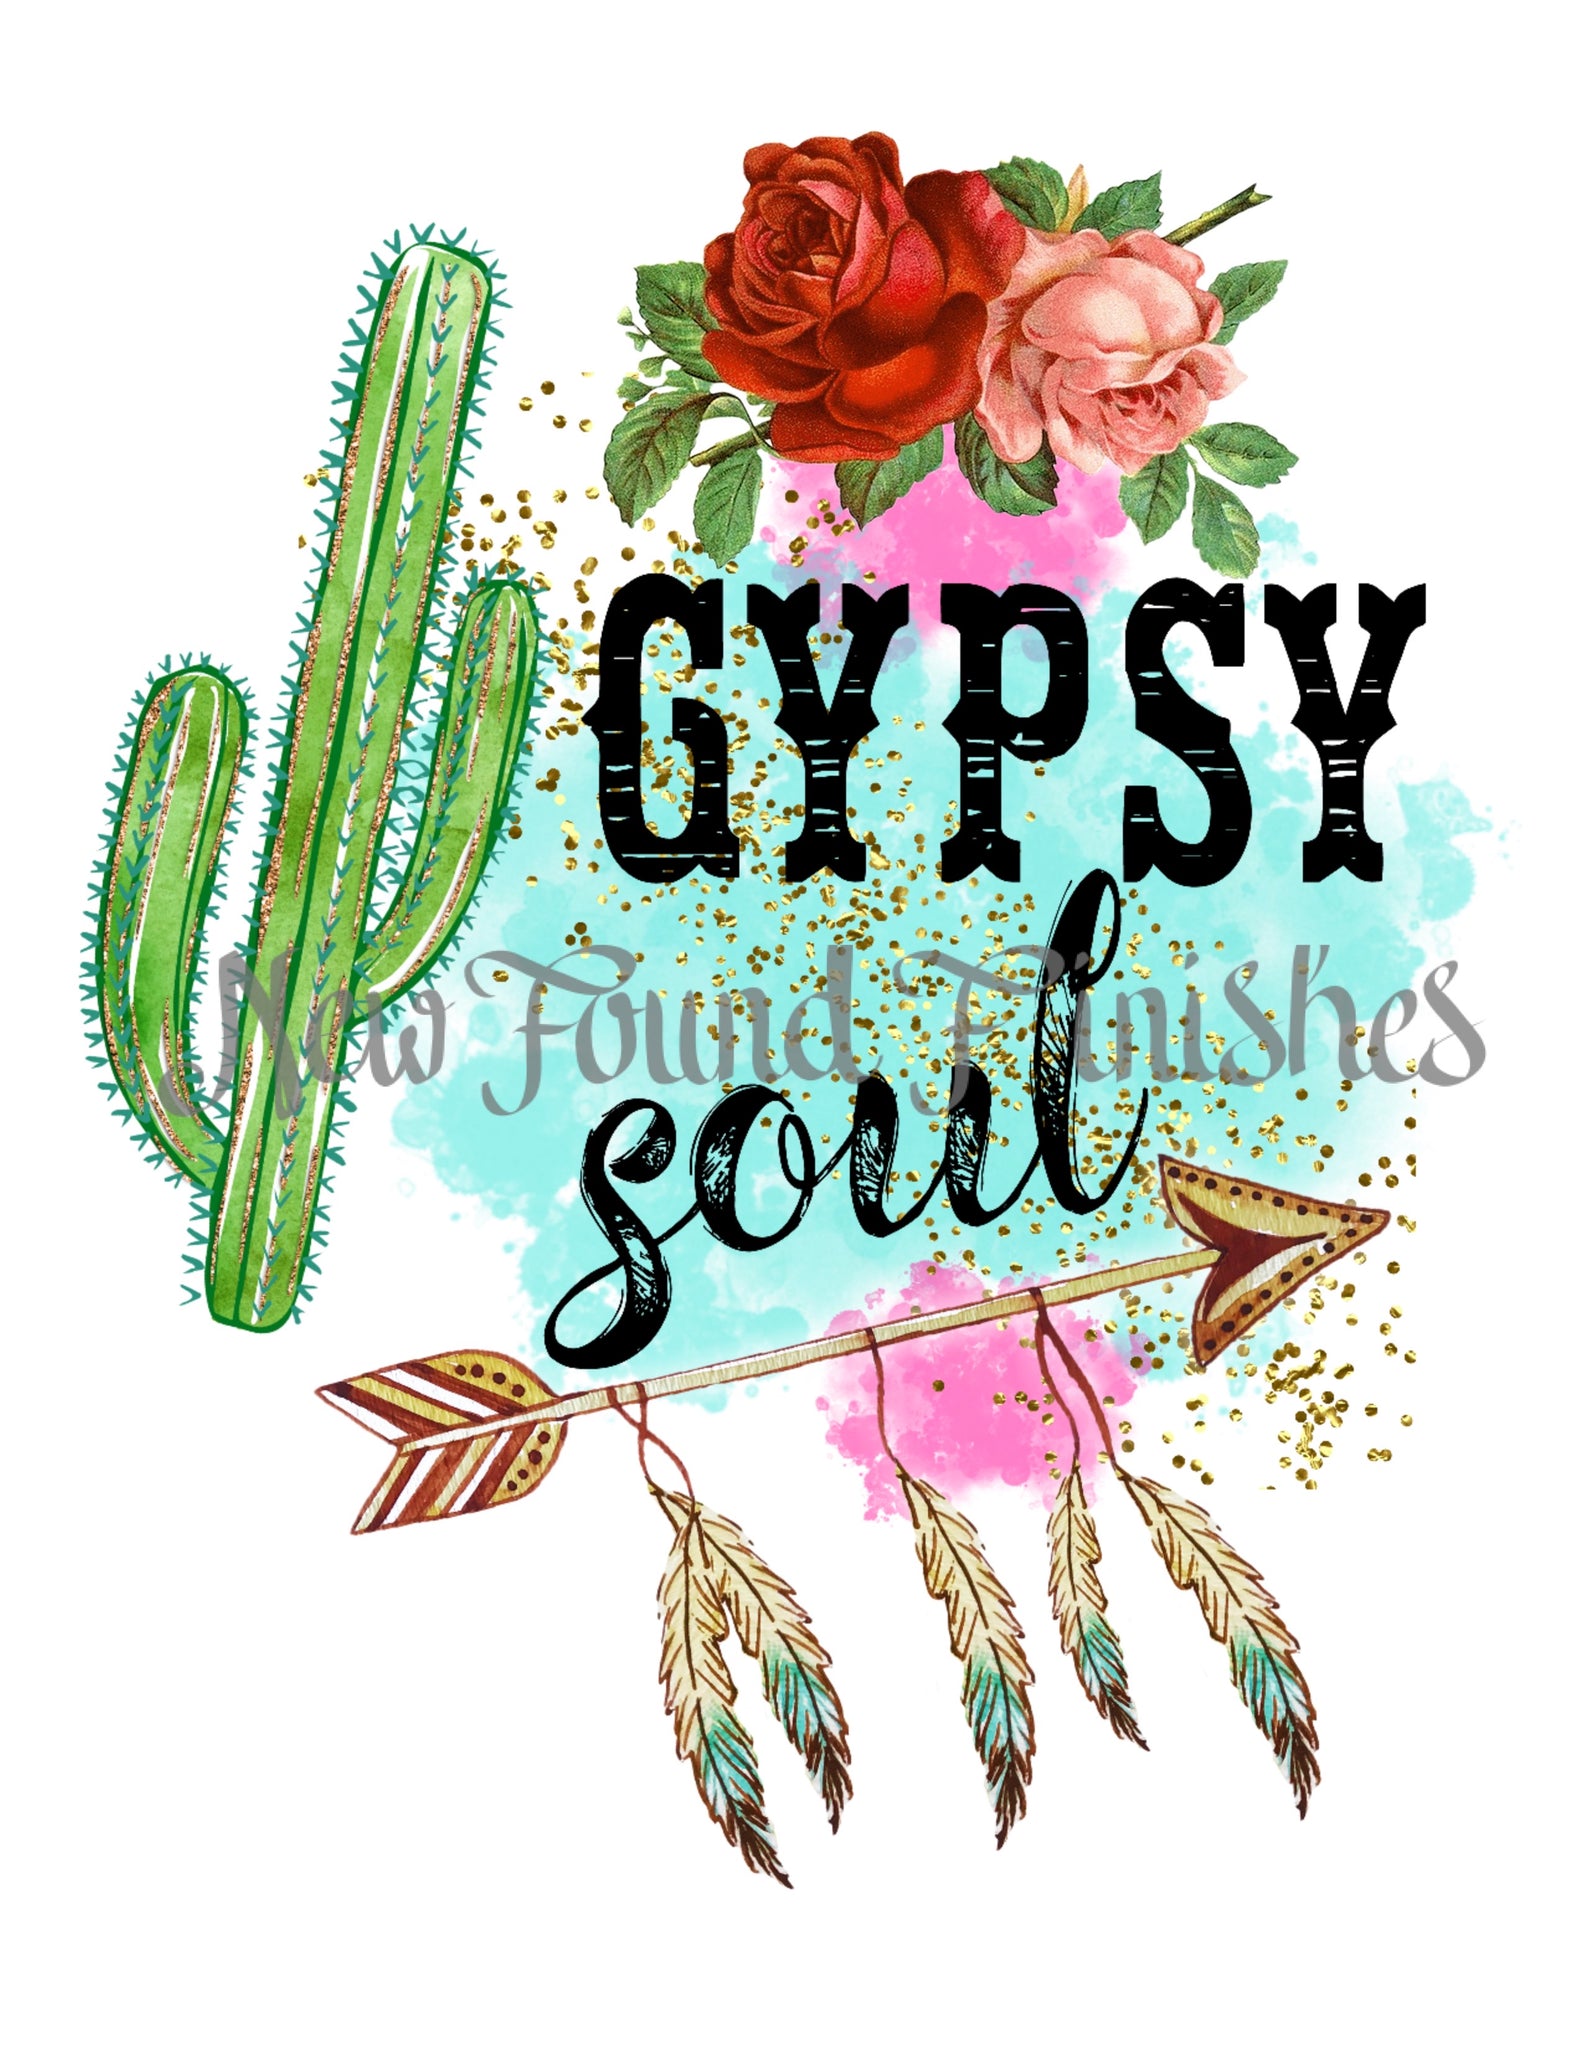 Gypsy soul 3